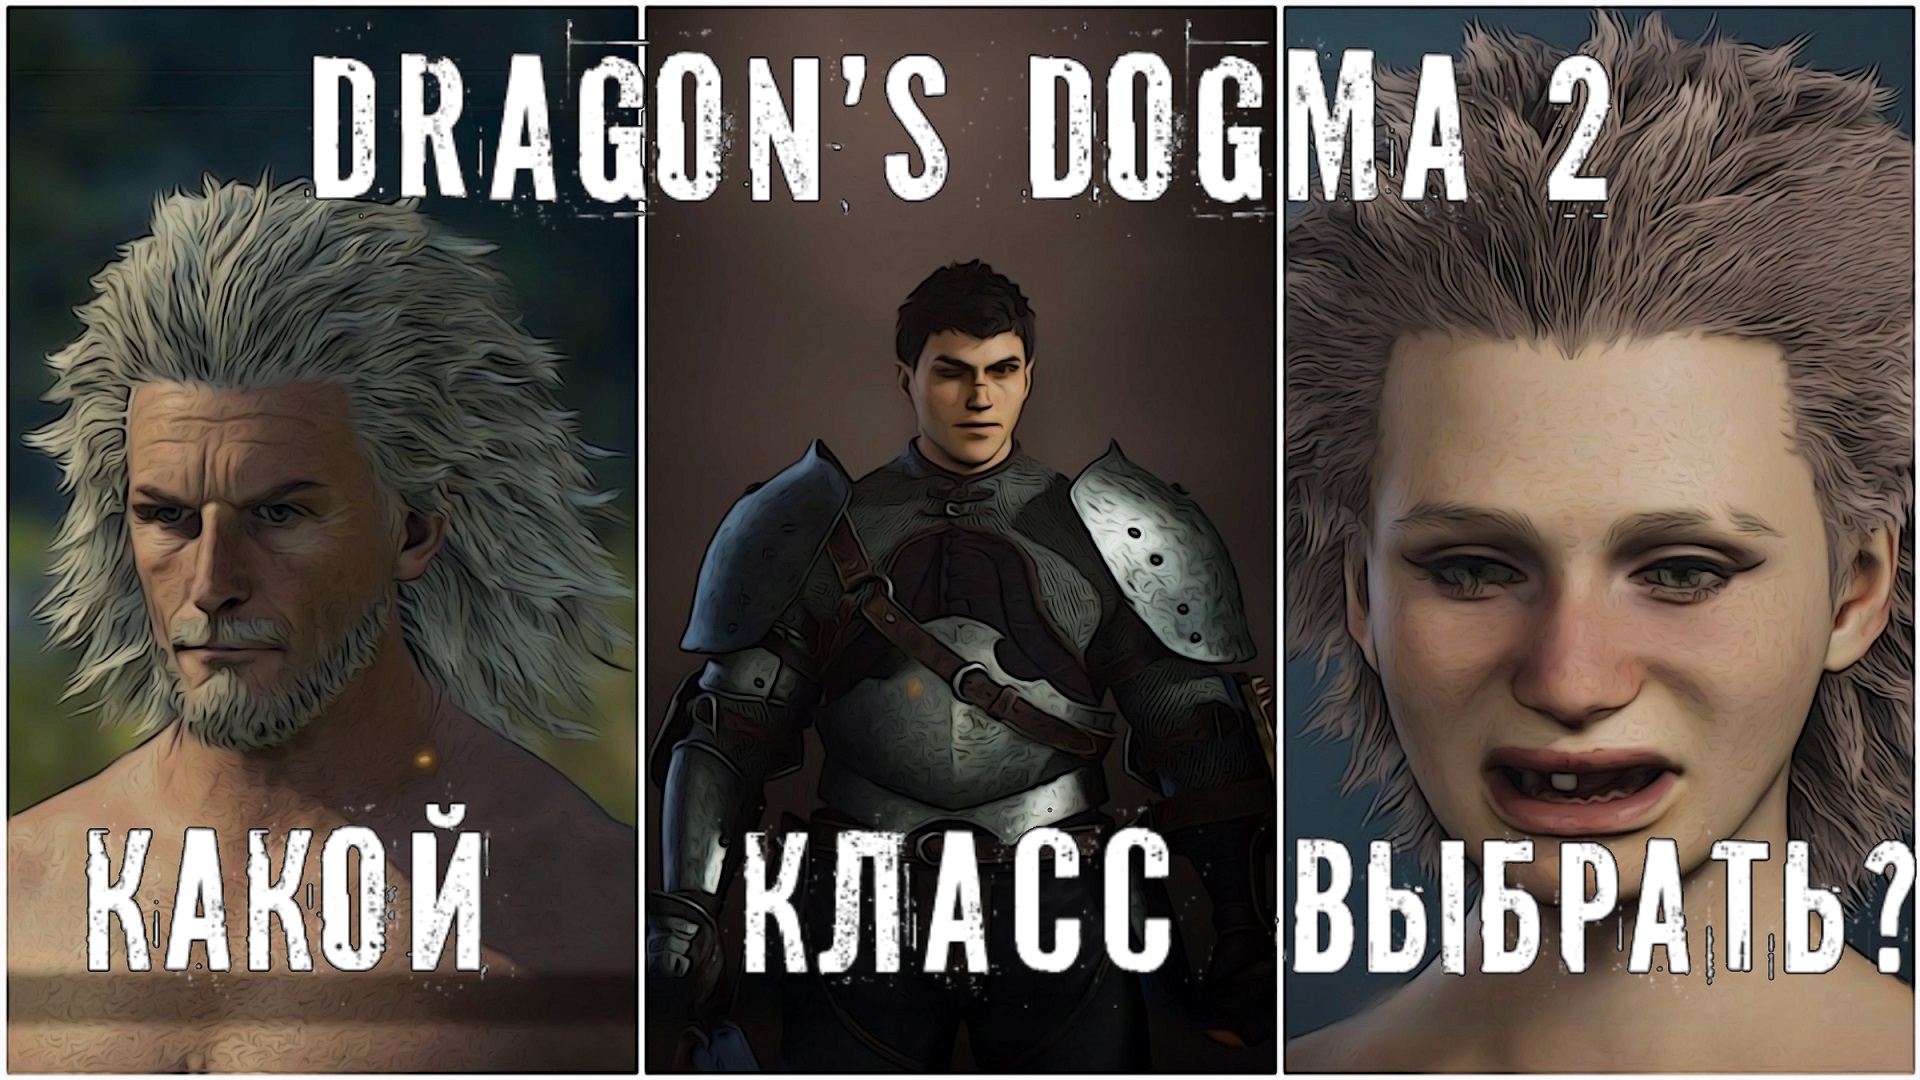 Dragon’s Dogma 2 создаю персонажа - какой класс выбрать? Ваши предложения.